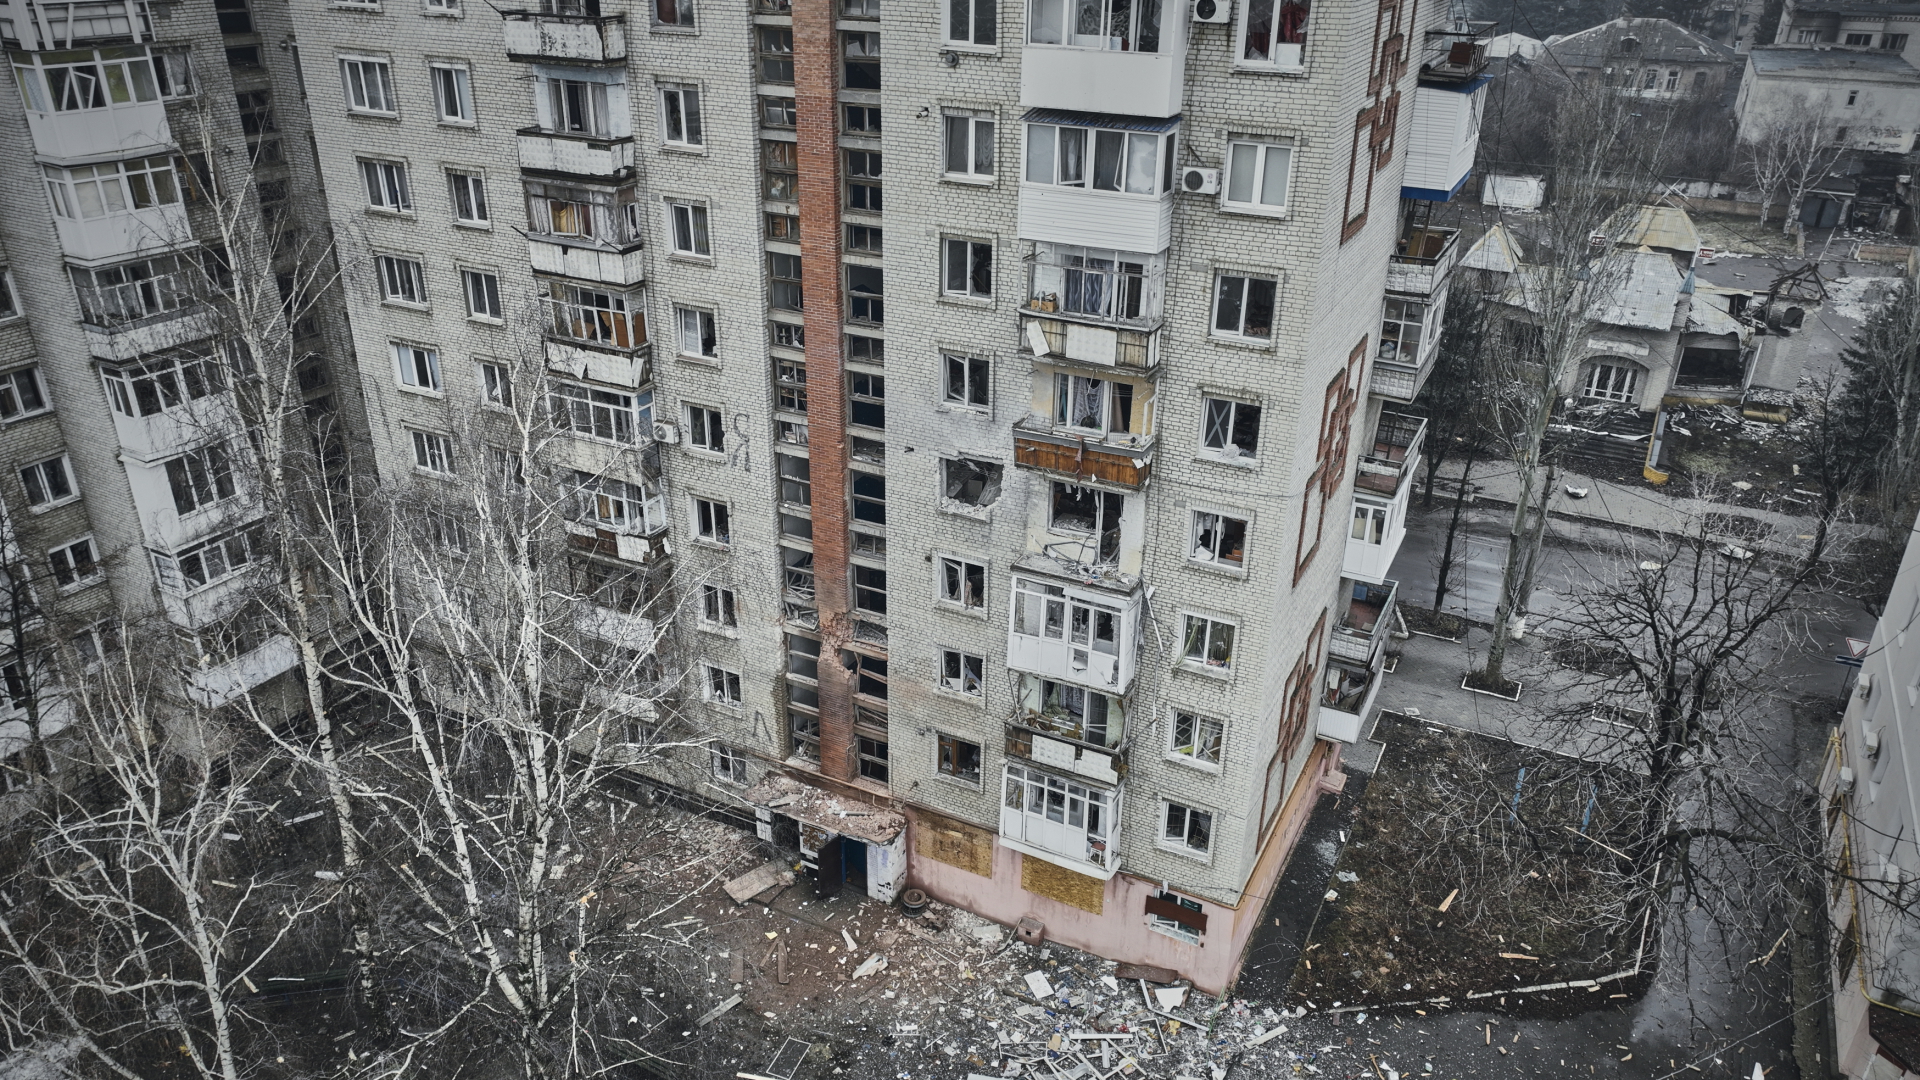  Ein beschädigtes Gebäude ist in dieser Luftaufnahme von Bachmut zu sehen, dem Ort schwerer Kämpfe mit russischen Truppen in der Region Donezk. | dpa